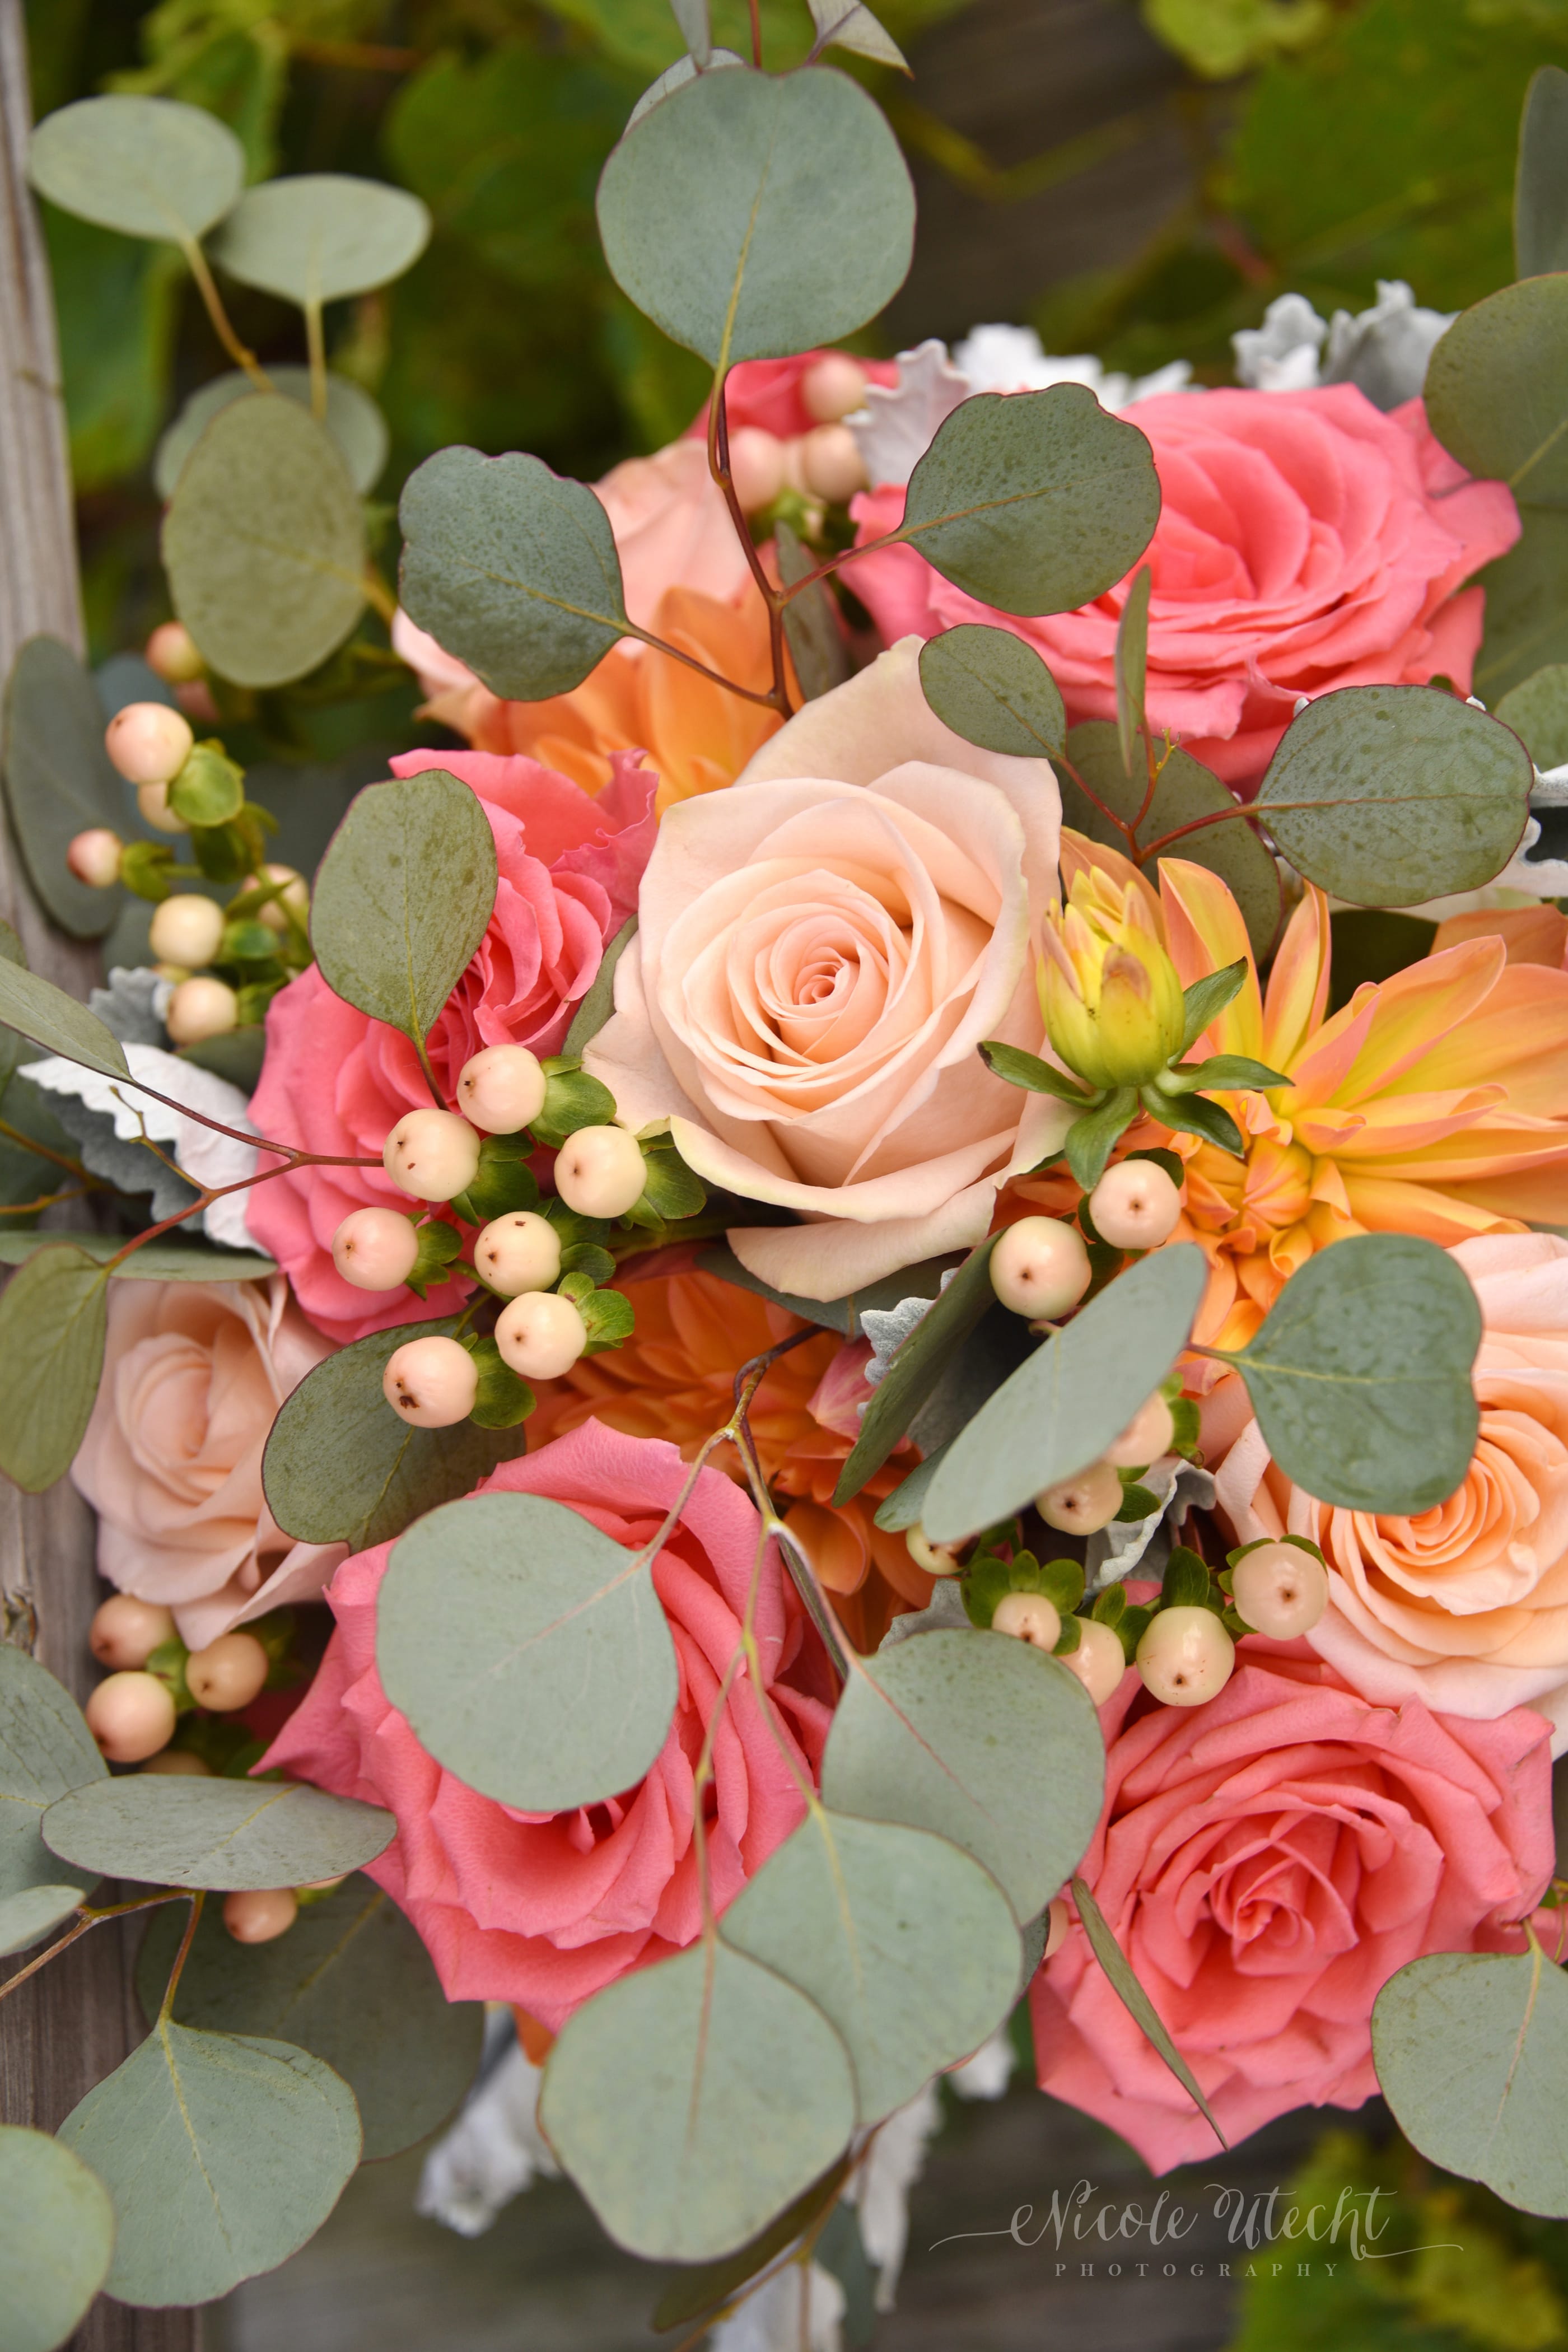 Bridal Wedding Bouquet